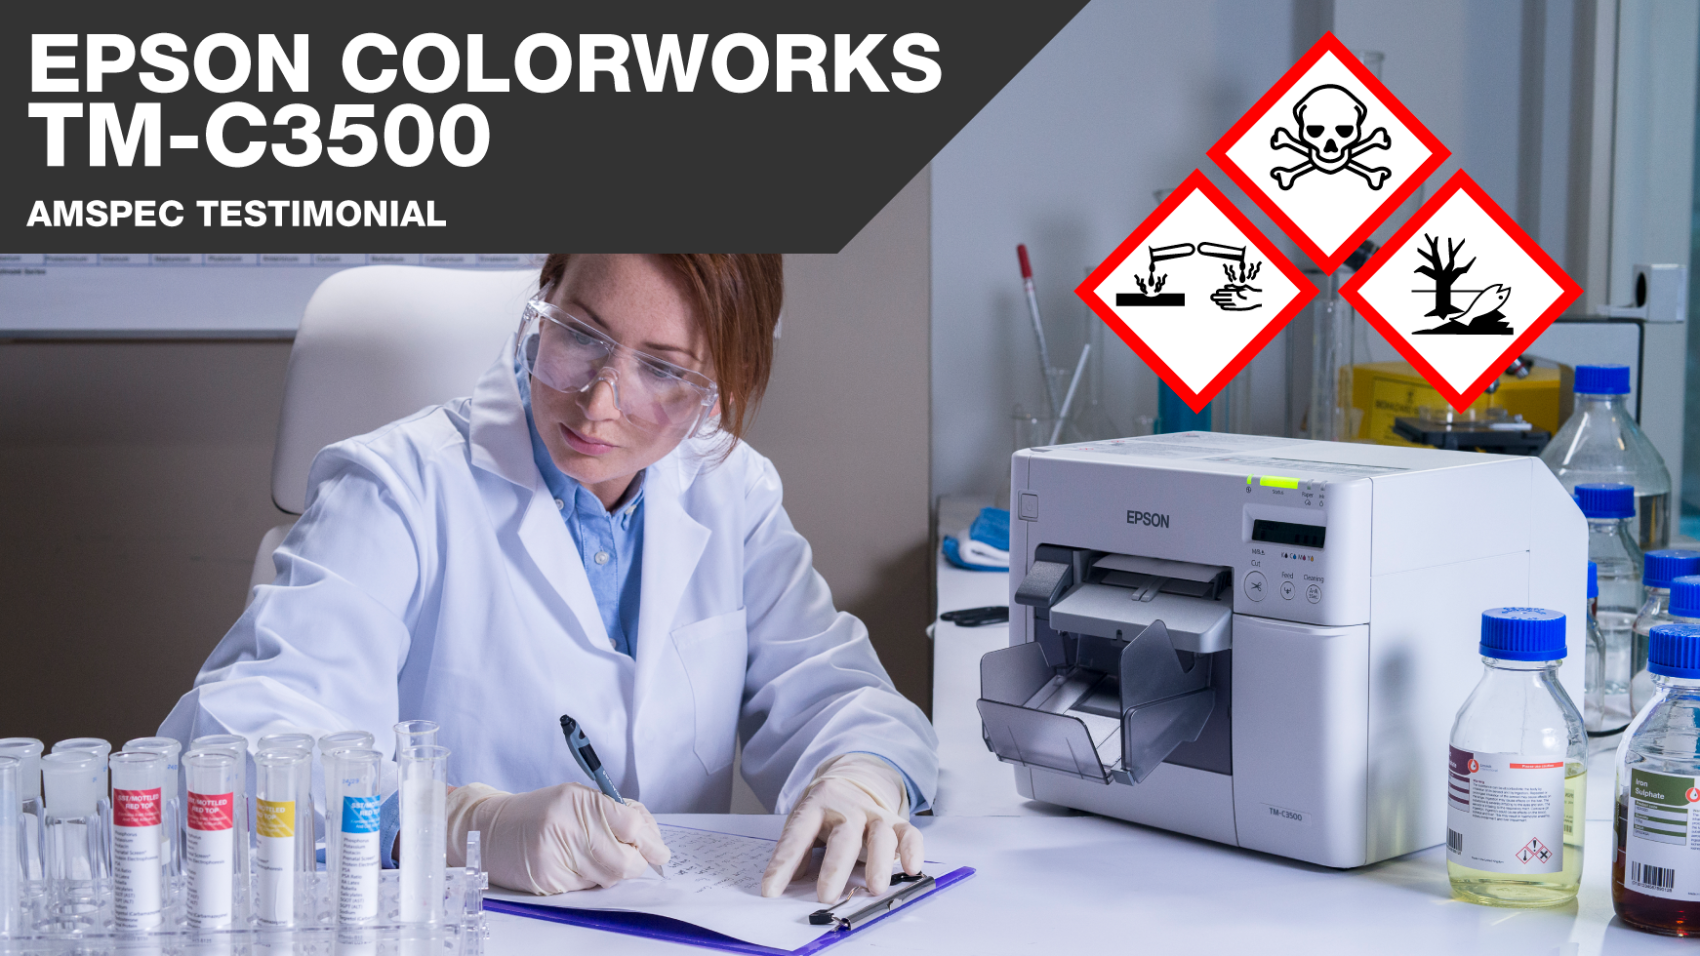 Epson ColorWorks TM-C3500 GHS en BS5609 labelprinter voor chemie